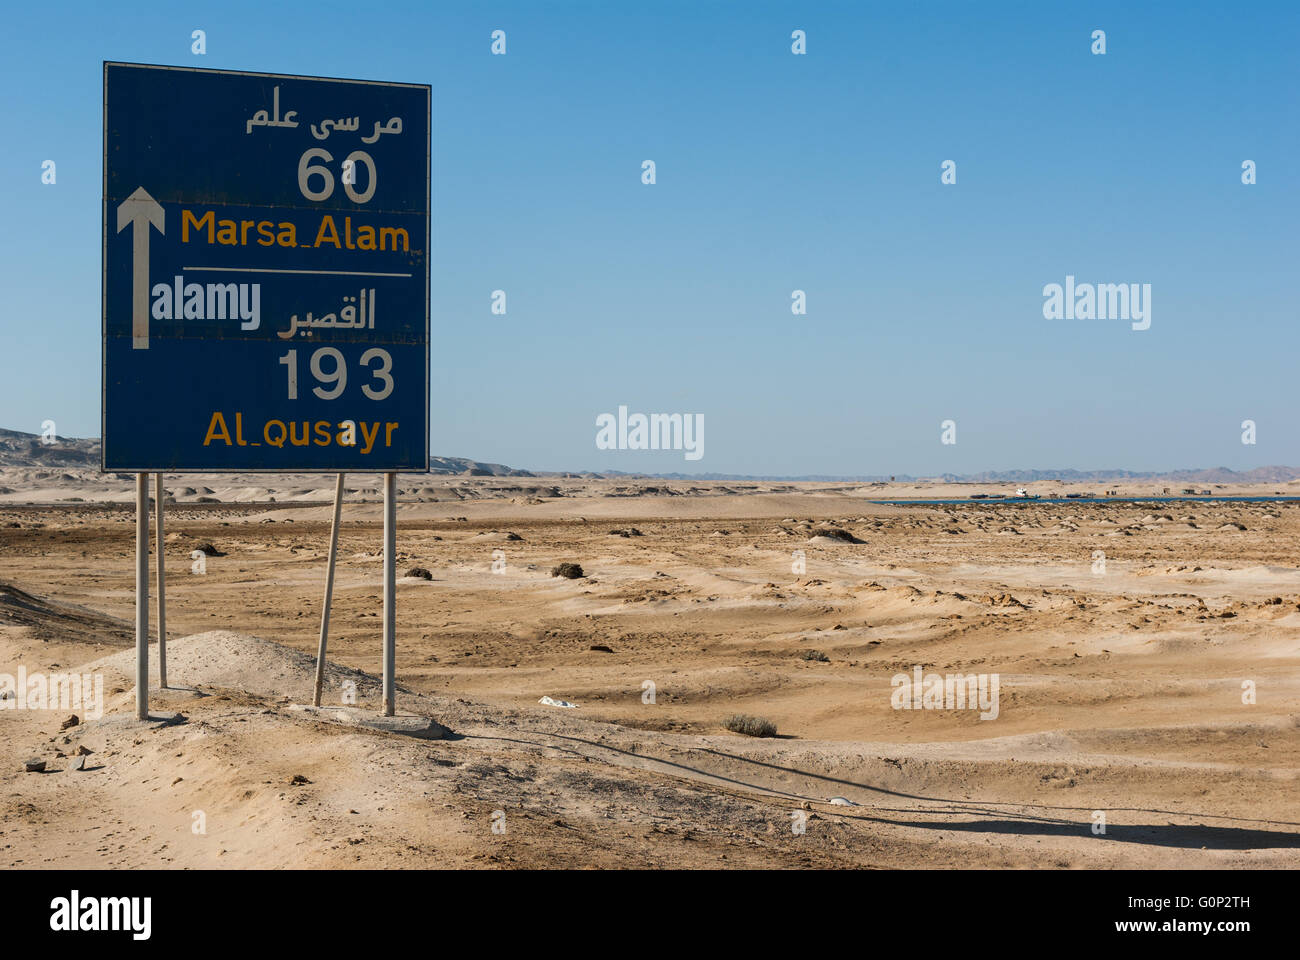 60 Marsa Alam, Al Qusayr 193 - roadsign (après inscription) par la Marsa Alam Berenice Road, Haute Egypte Banque D'Images